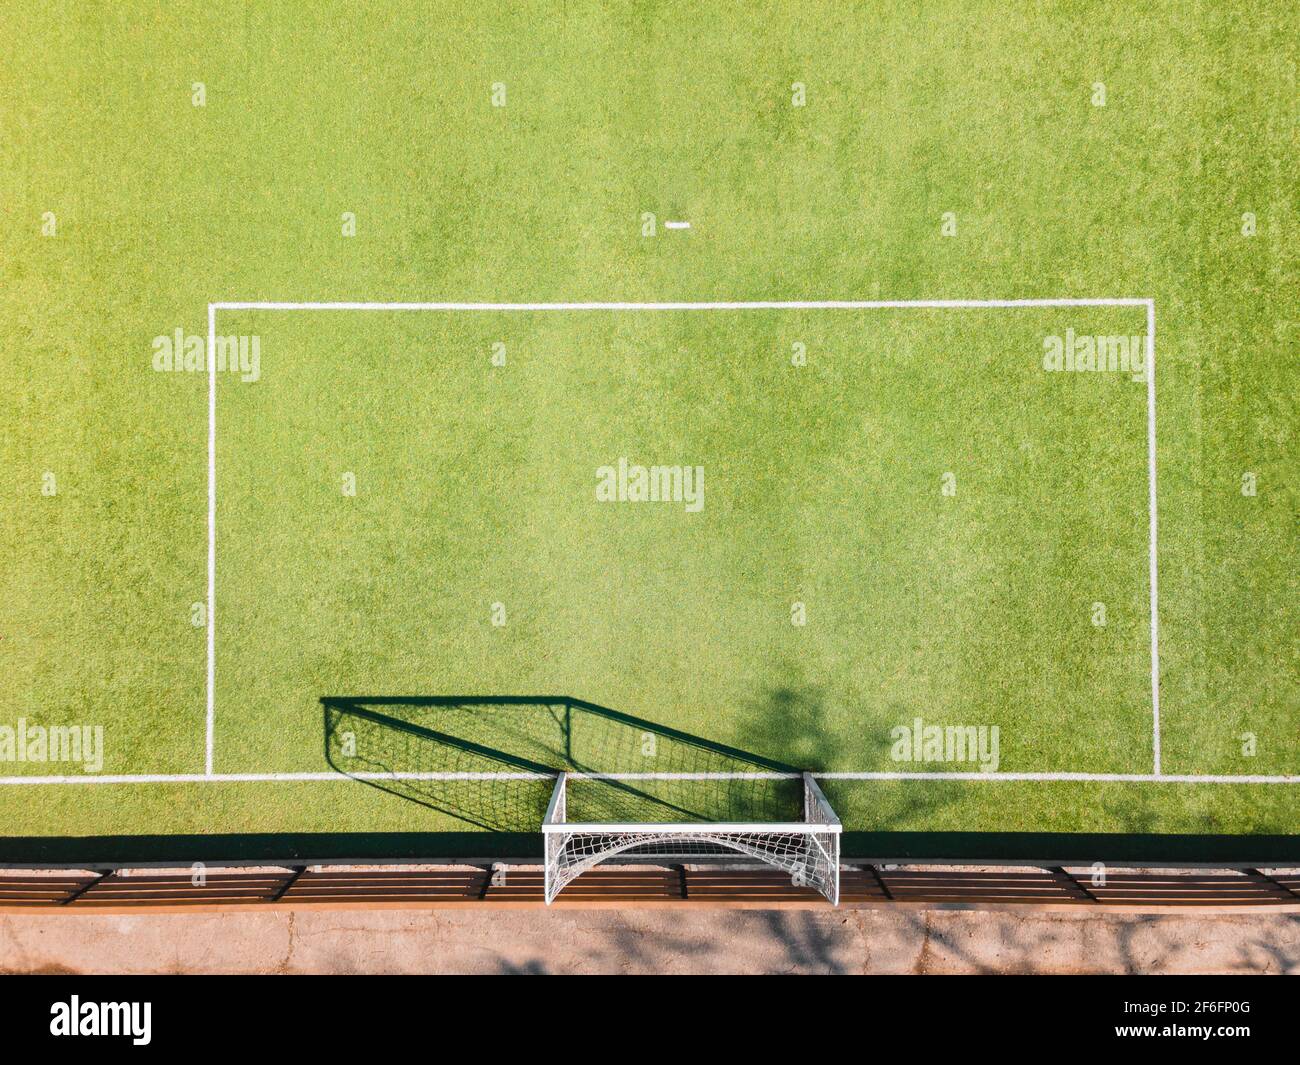 Details Zum Fußballplatz. Outdoor-Sportplatz mit grüner Oberfläche für Fußball oder Fußball im städtischen Bereich, Detail, Drohne Ansicht Stockfoto